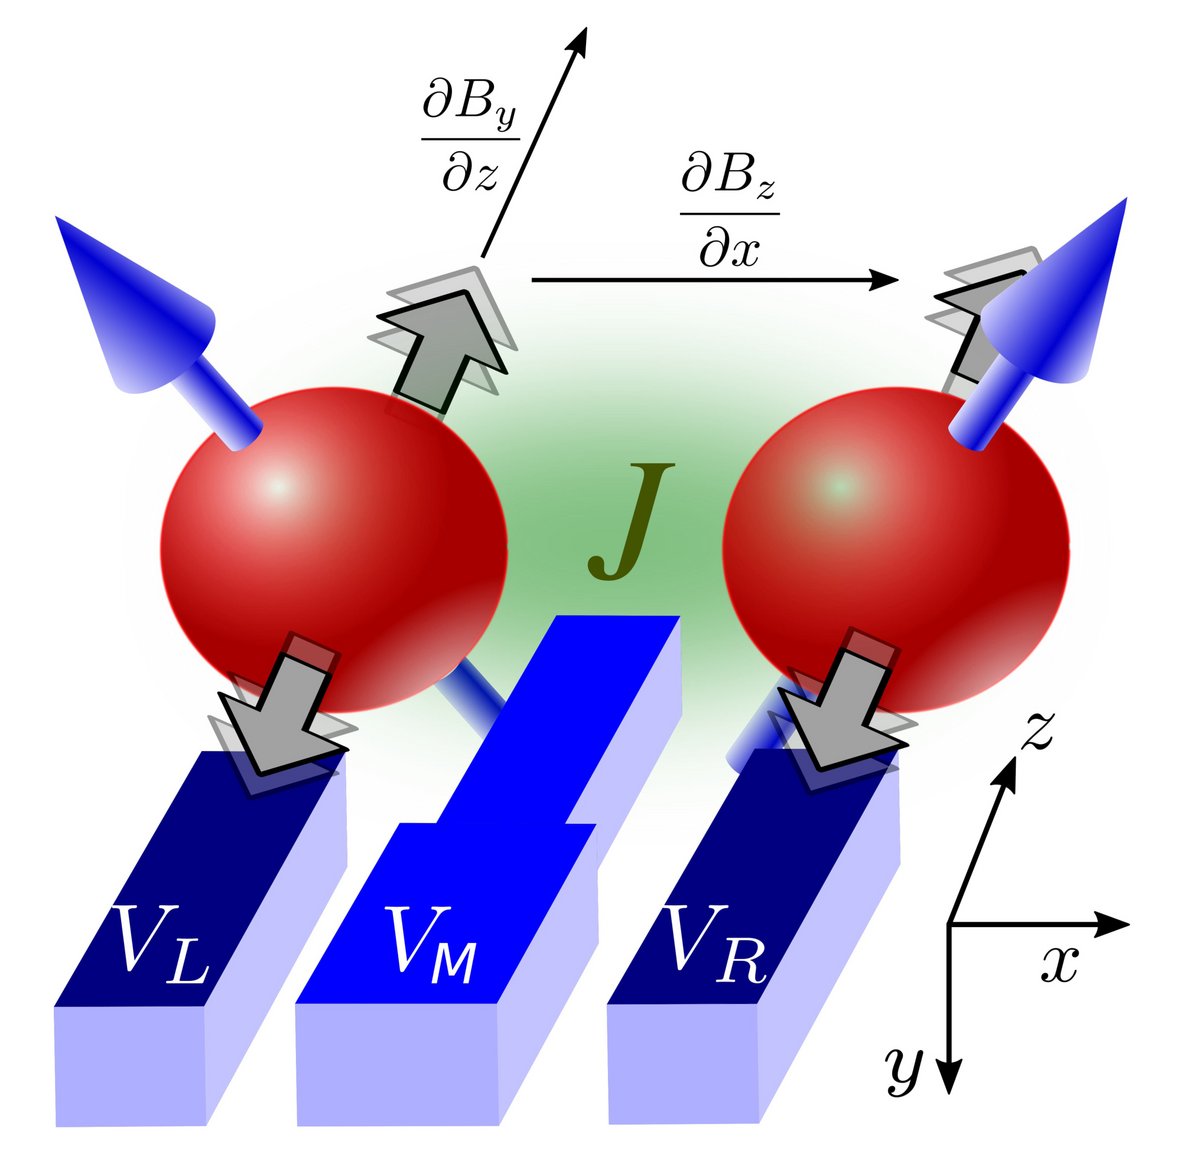 Quantengatter aus zwei Silicium-Elektronen. Die Drehimpulse der beiden Elektronen werden durch zwei Nano-Elektroden (VL und VR) kontrolliert. Eine dritte Nano-Elektrode (VM) koordiniert die Interaktion beider Elektronen.